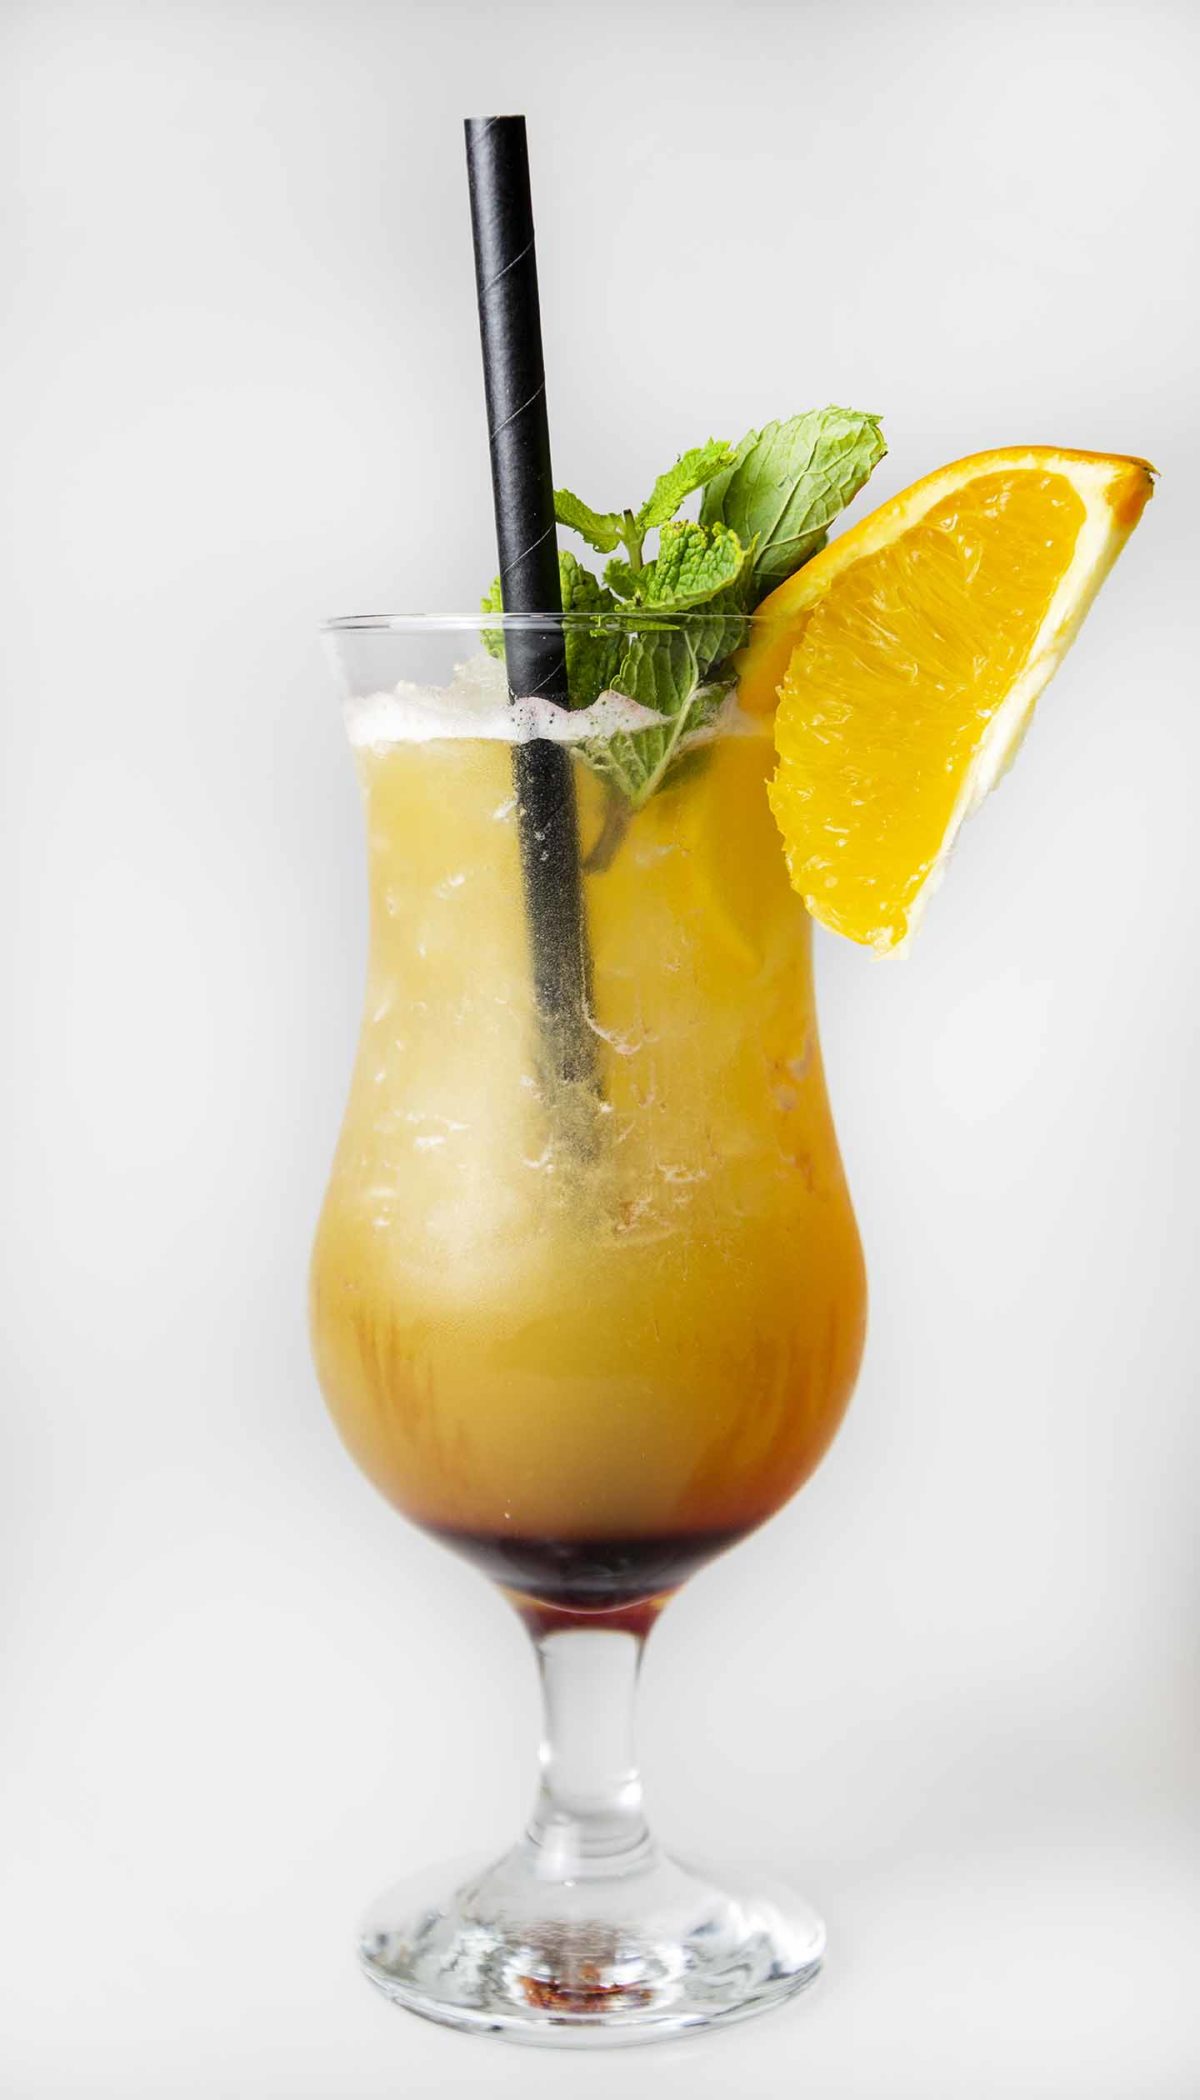 Bartender Cocktail